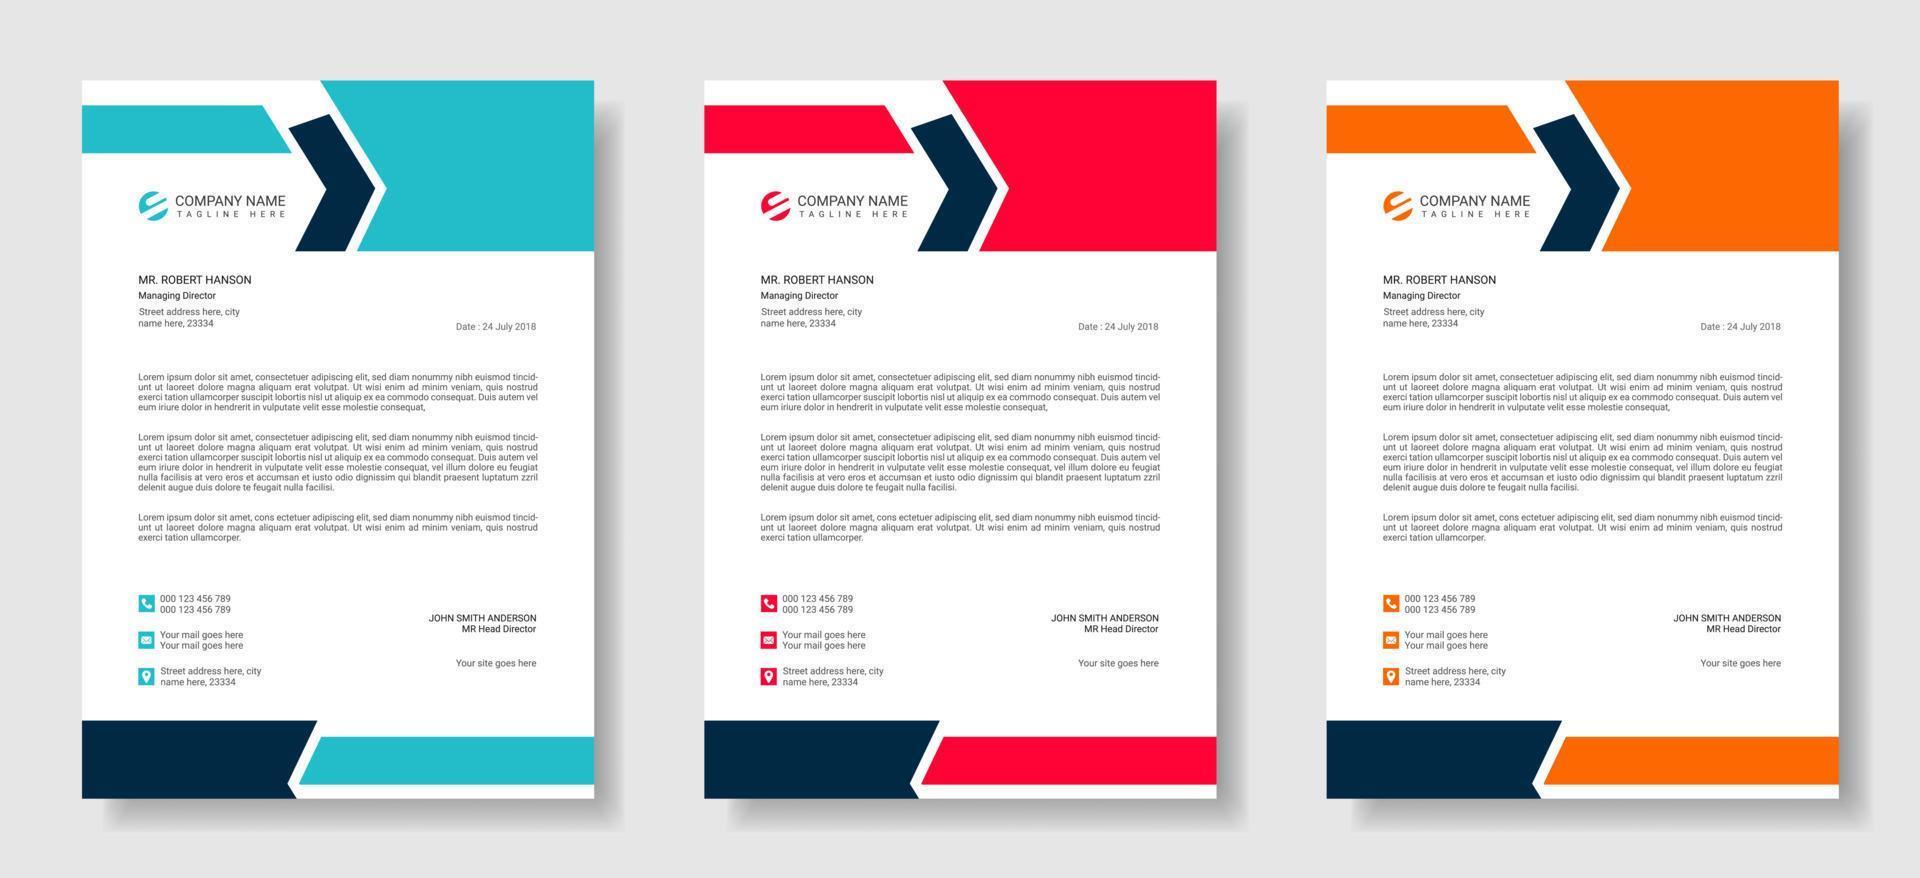 Moderne Briefkopf-Designvorlage für Unternehmen mit 3 verschiedenen Farben, kreatives modernes Briefkopf-Design, professioneller minimalistischer Briefkopf, abstraktes, elegantes oder vektorielles Vorlagendesign vektor